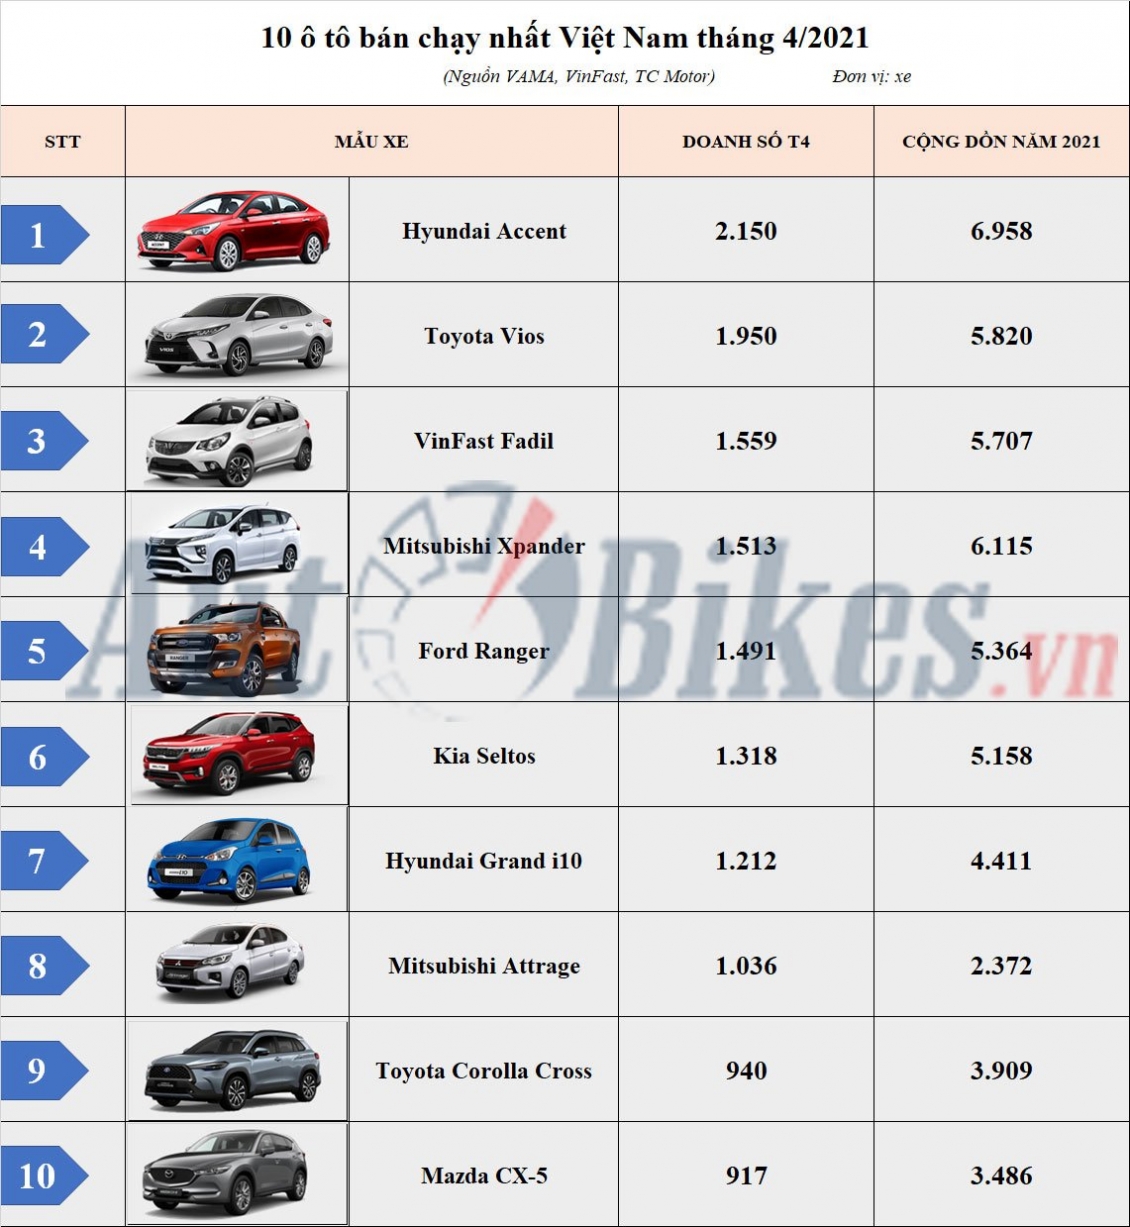 10 ô tô bán chạy nhất Việt Nam: Mitsubishi Attrage bất ngờ vượt Honda City